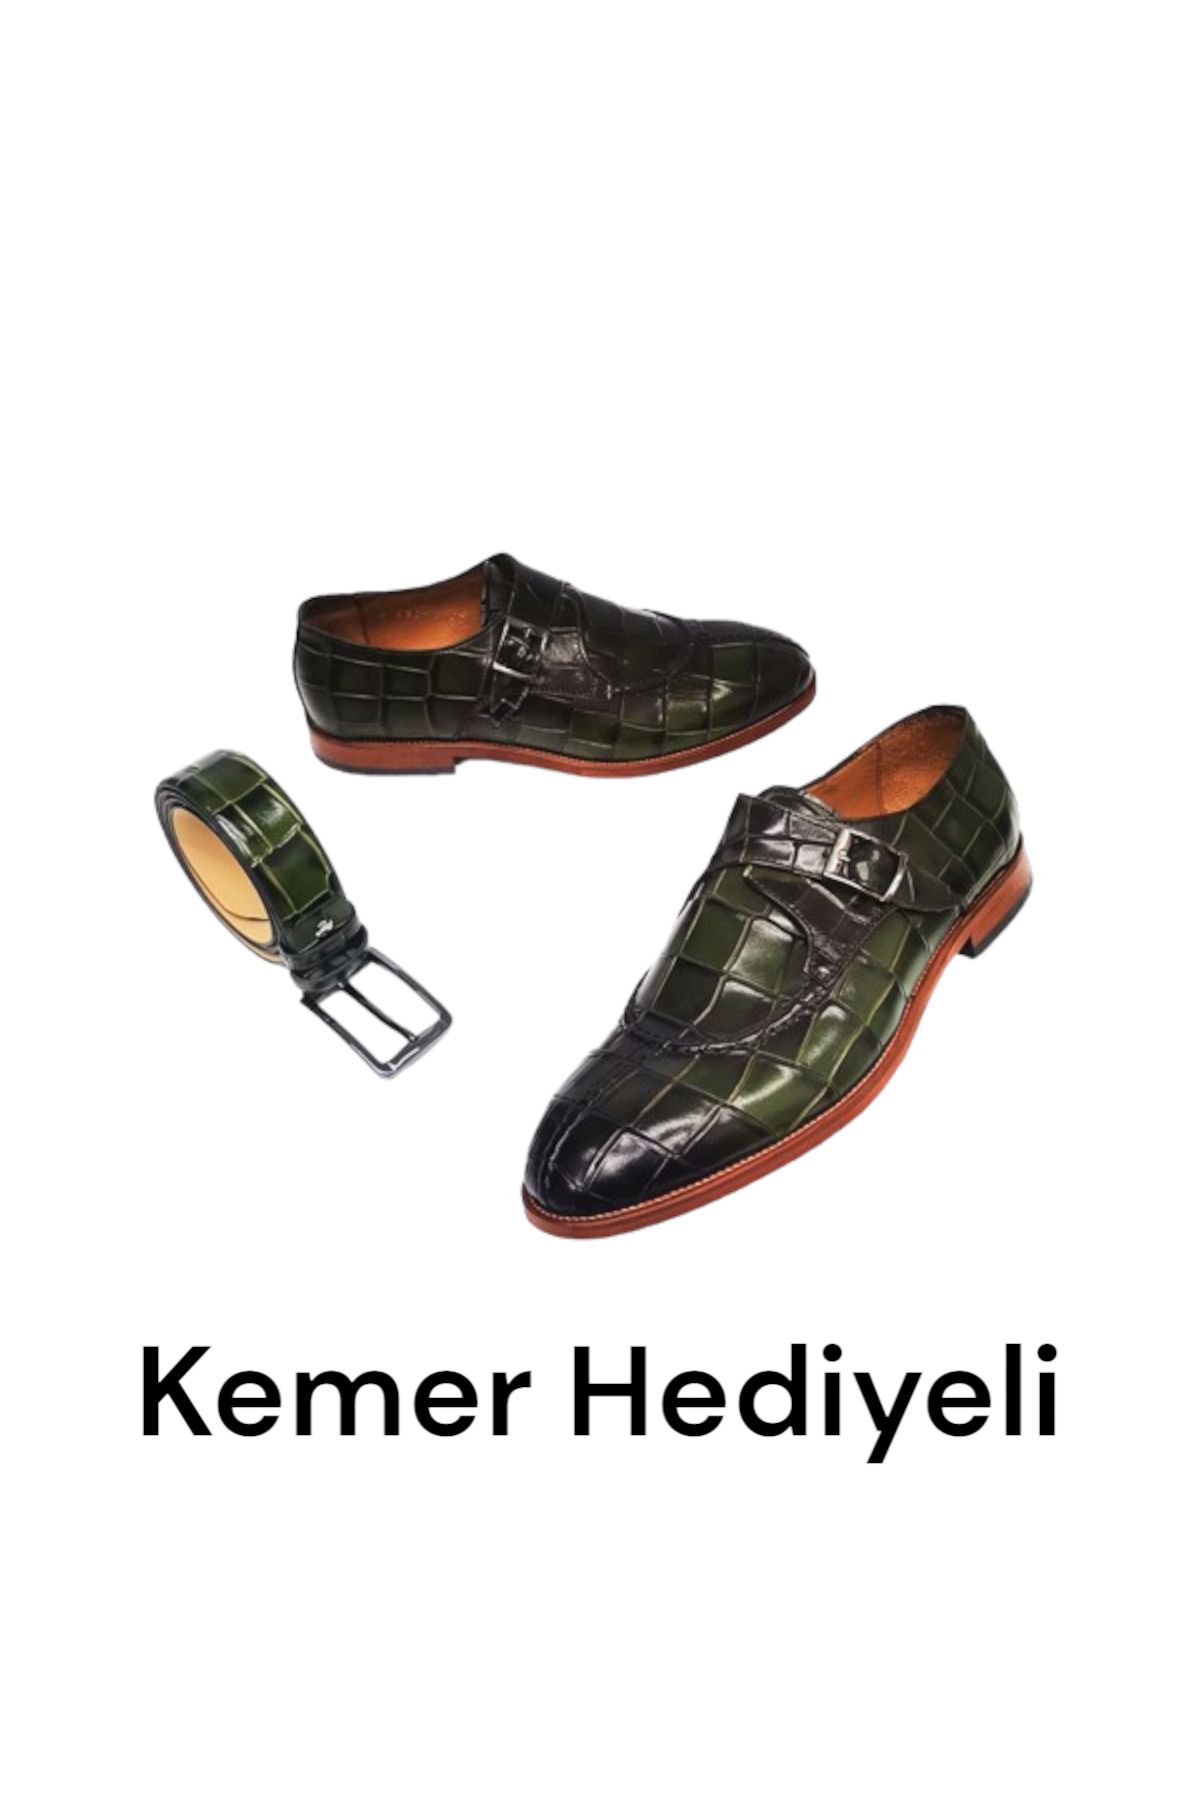 CassidoShoes Hakiki Deri Özel Tasarım Toka Detaylı Haki Erkek Ayakkabı Ve Kemer Set 023-43254